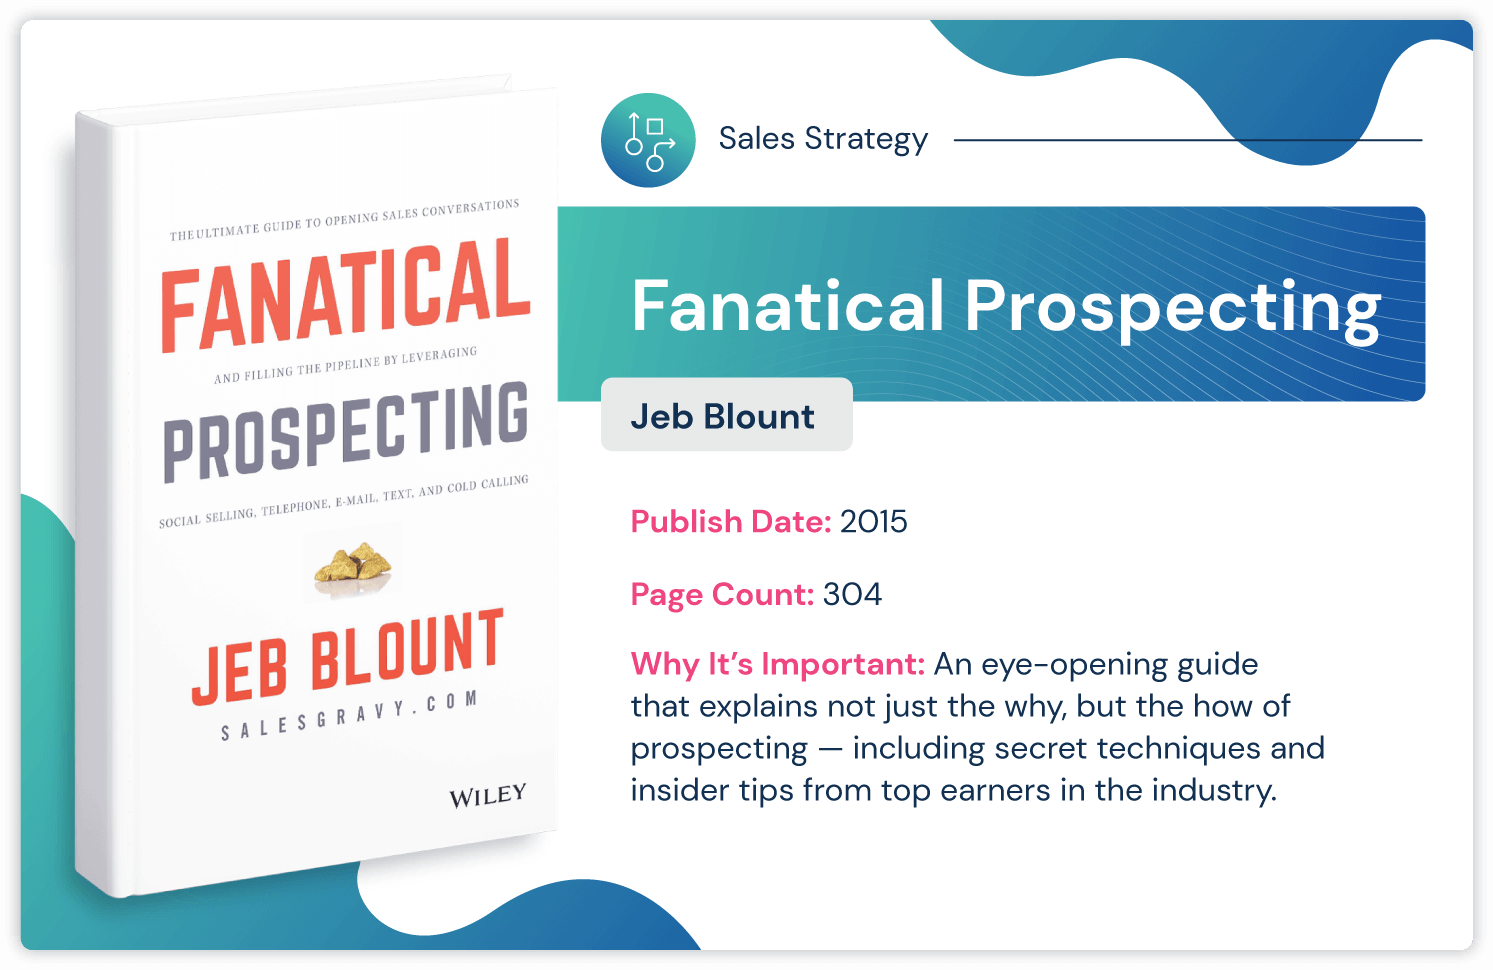 Livre de stratégie commerciale "Prospection fanatique" de Jeb Blount sur les conseils de prospection d'initiés publié en 2015 et 304 pages